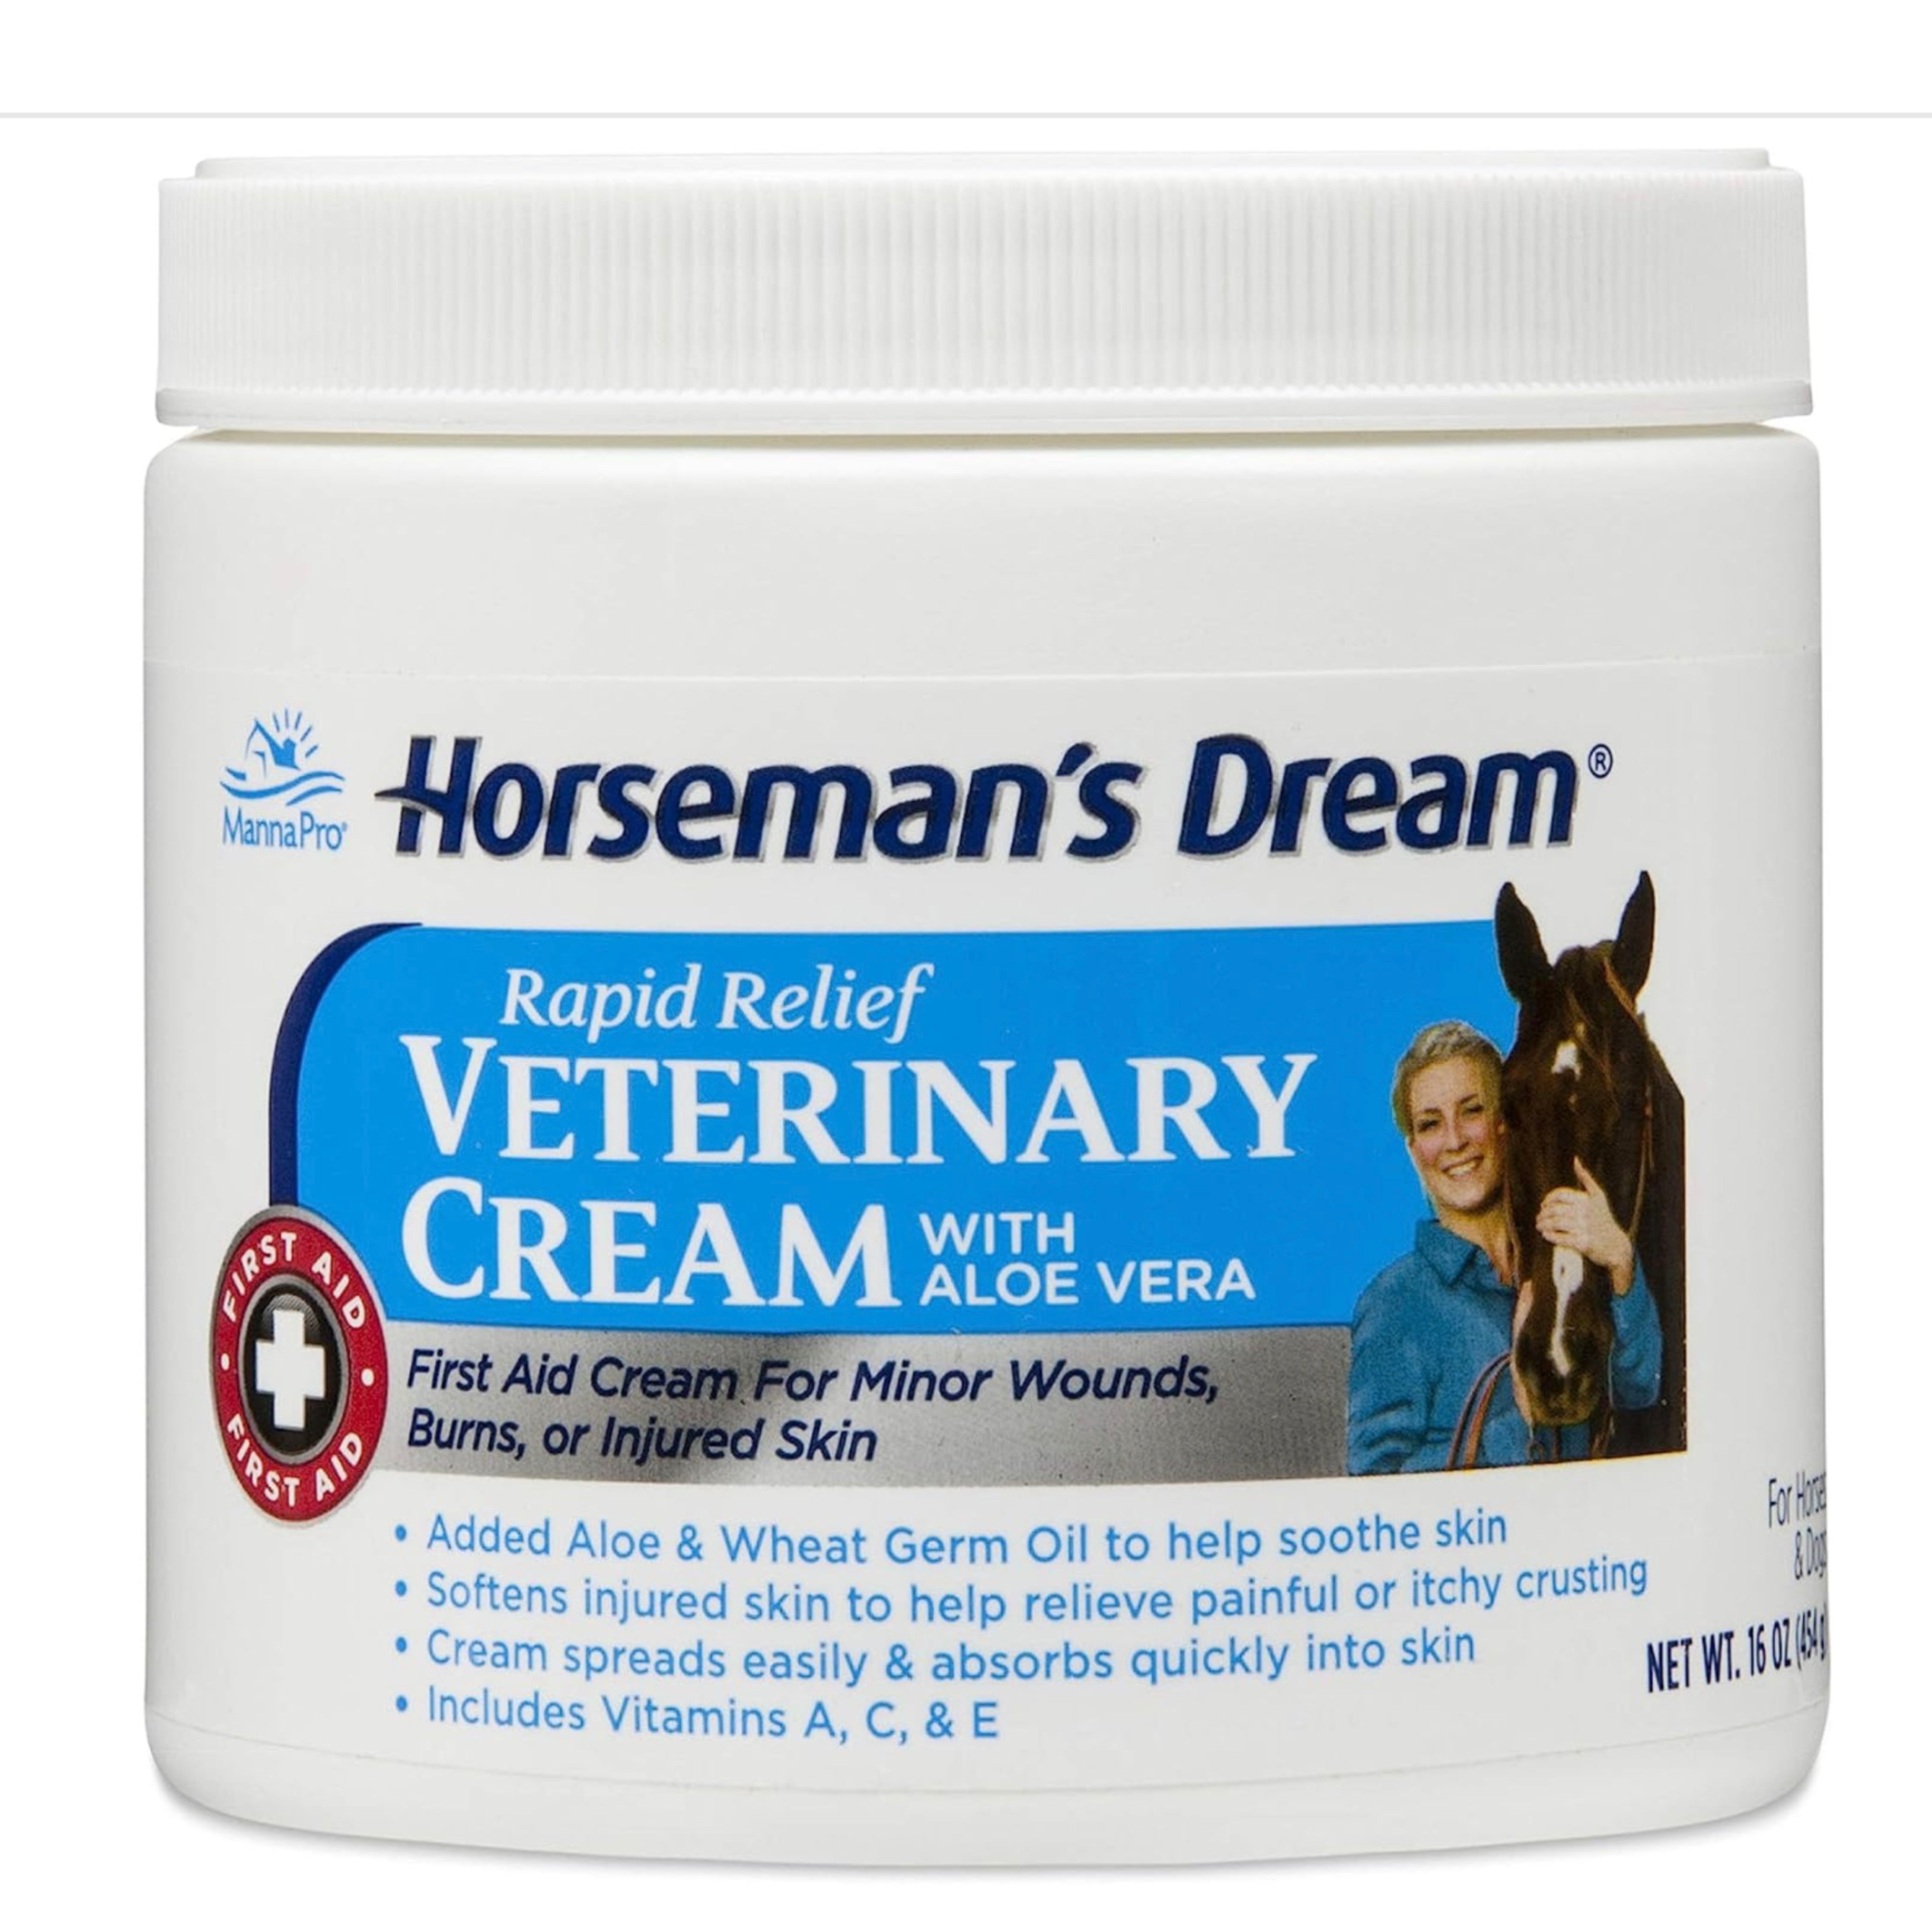 Horseman's Dream Vet Cream 16oz